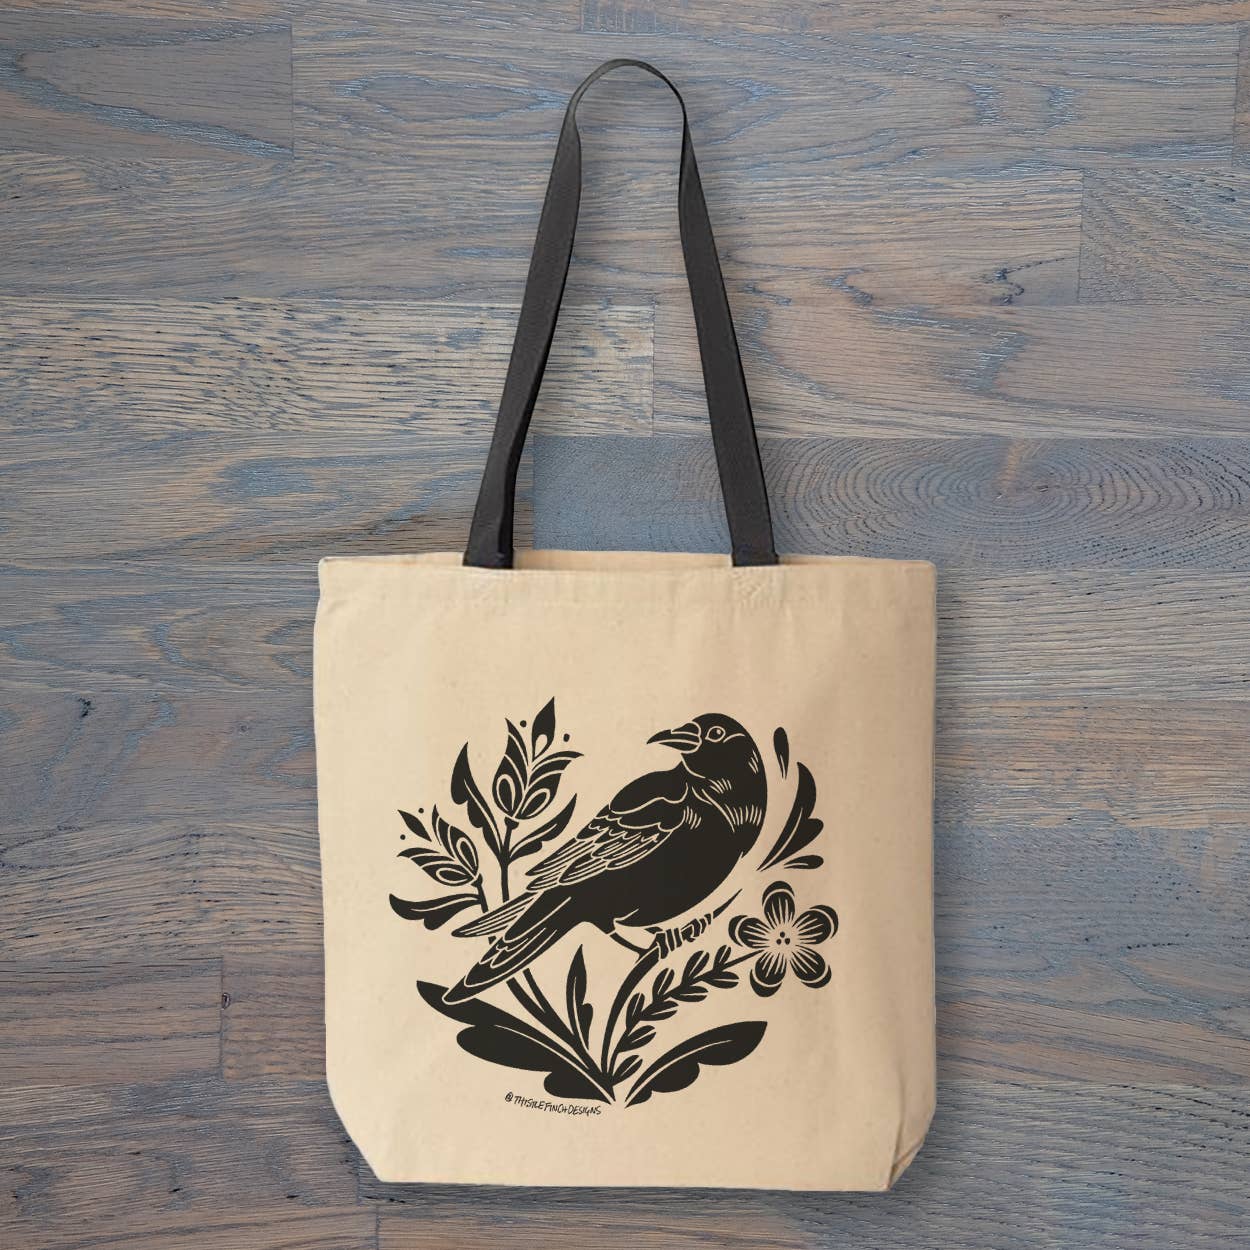 Crow Distelfink PA Dutch Tote Bag